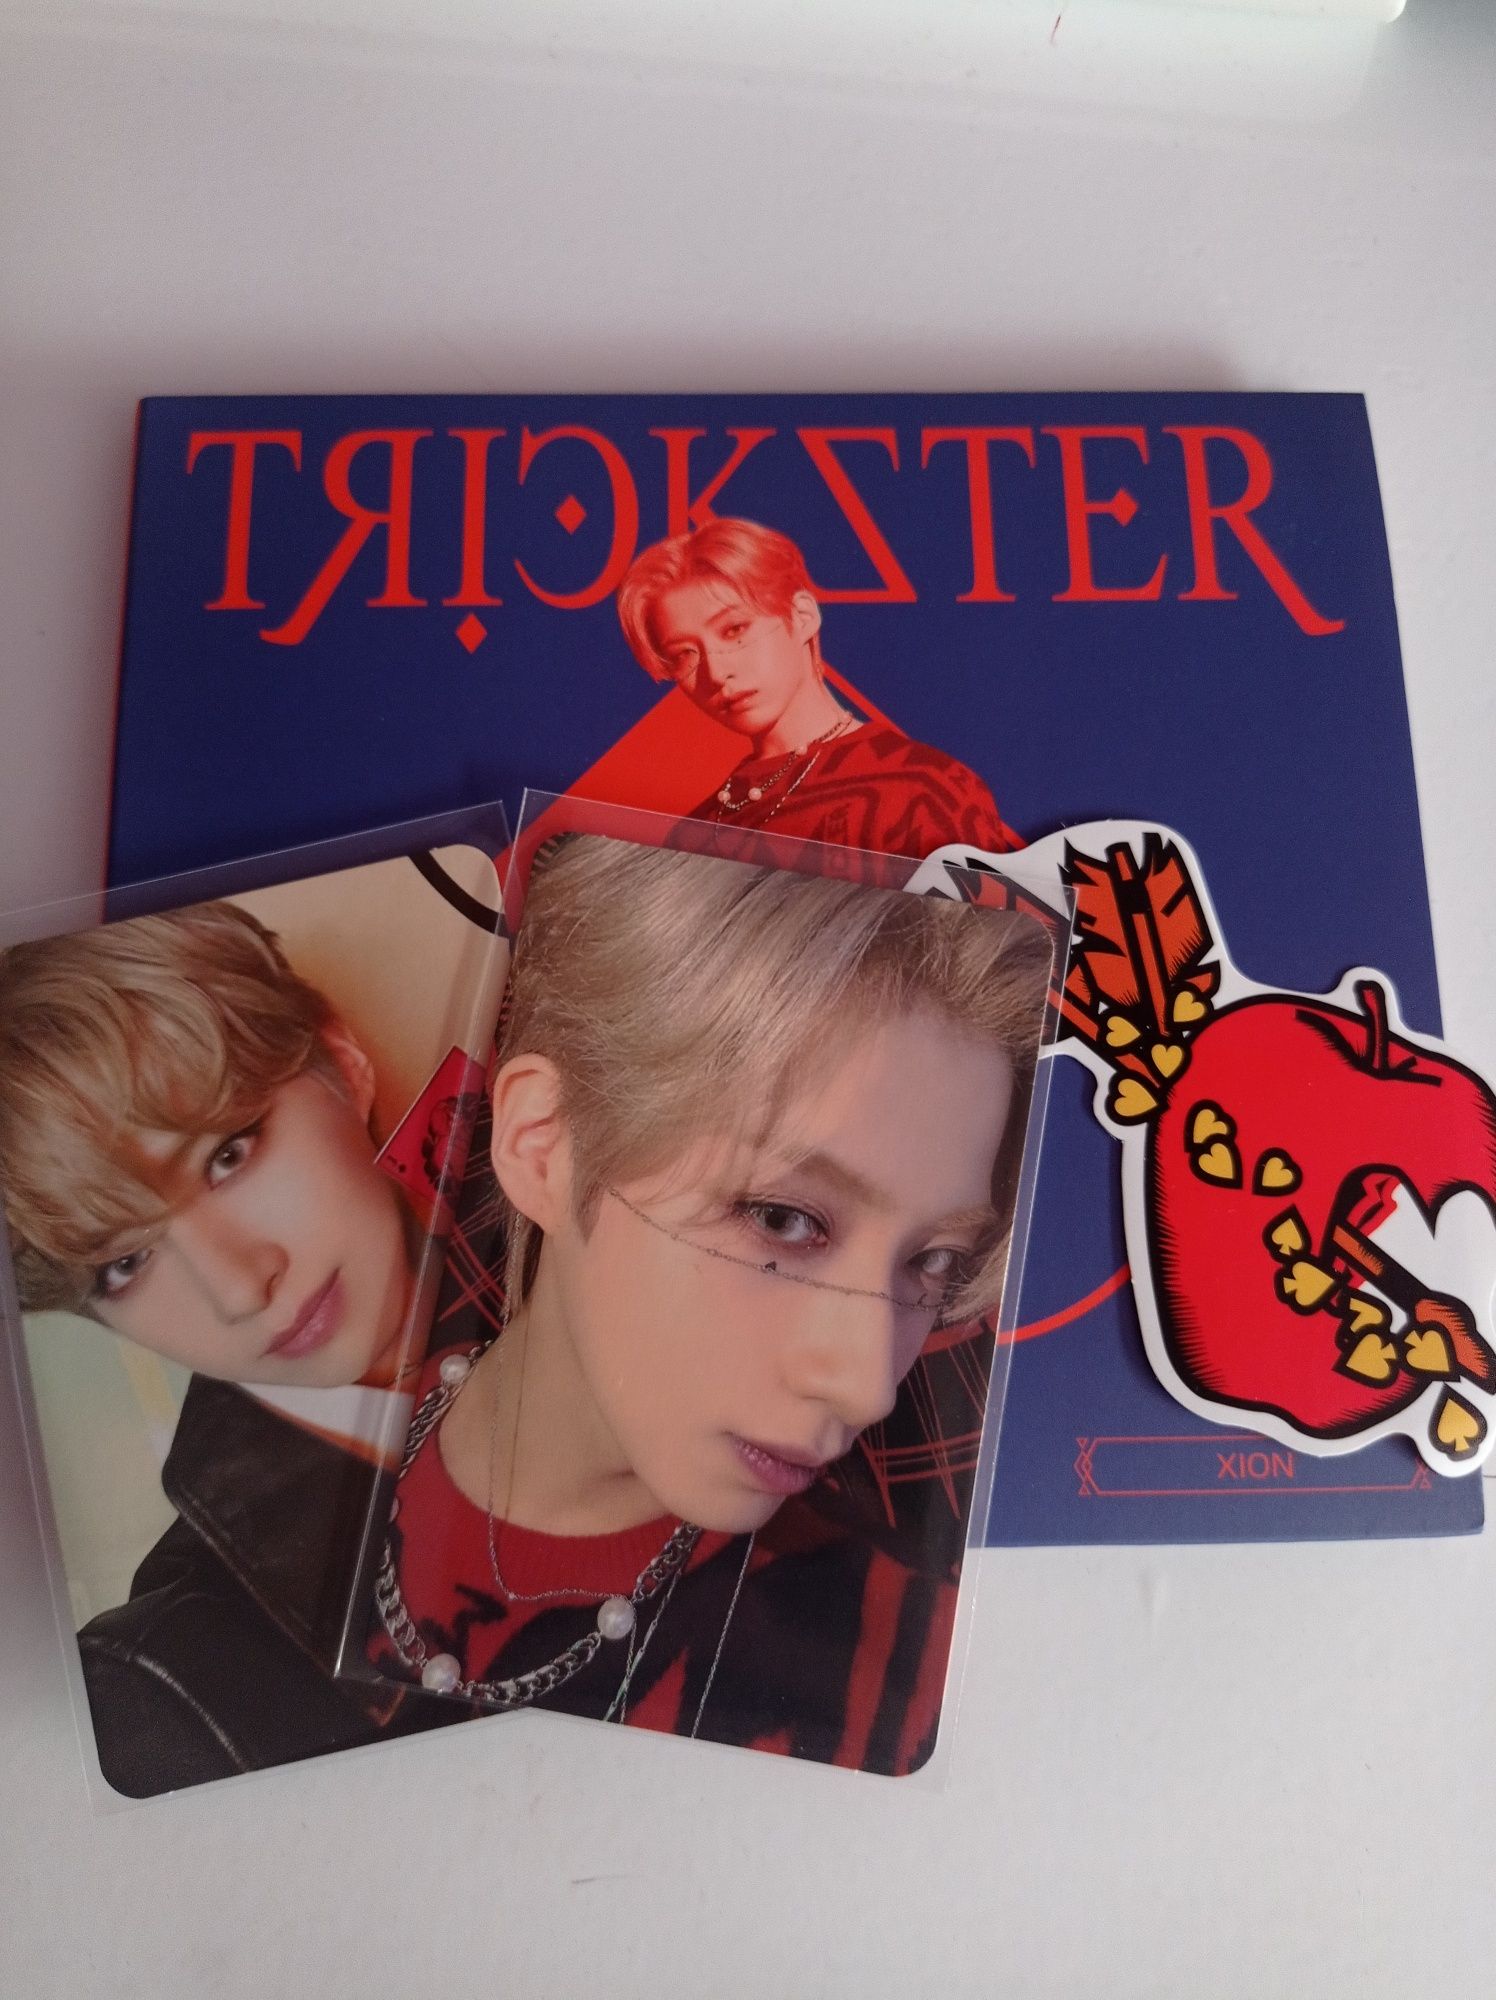 Oneus album trickster xion seoho kpop CD